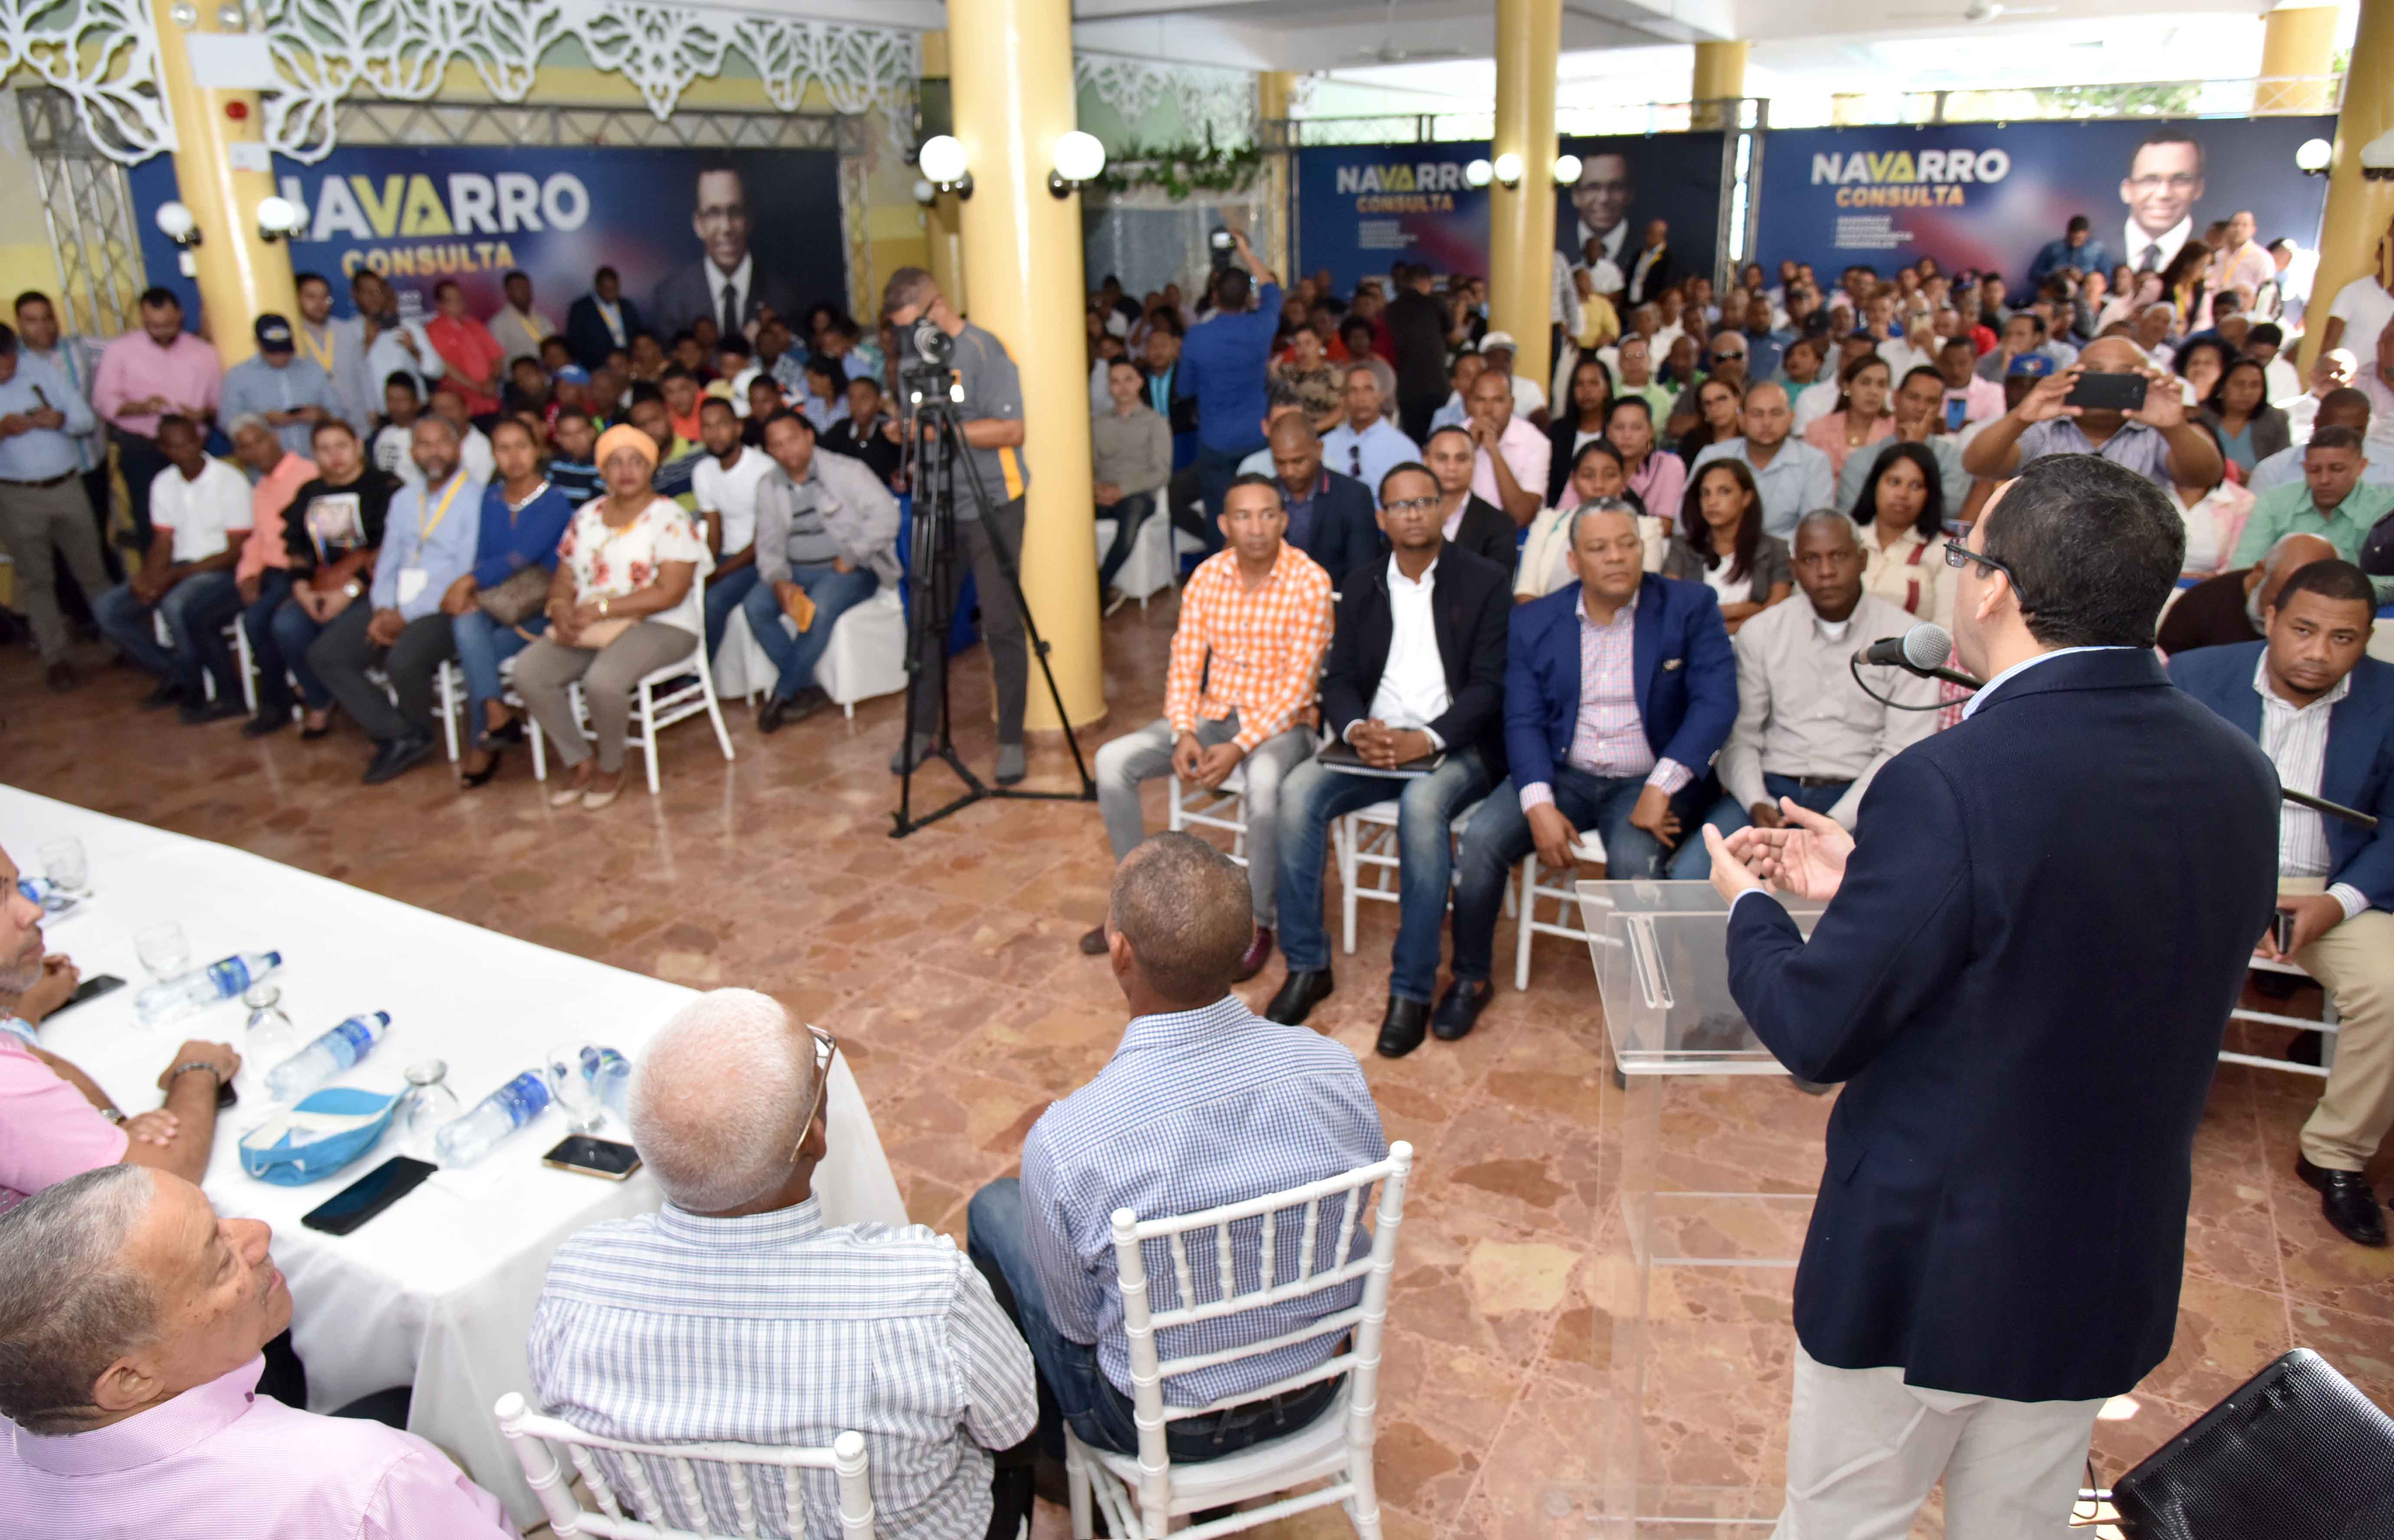 Navarro asegura su gobierno tendrá la gente como centro del desarrollo